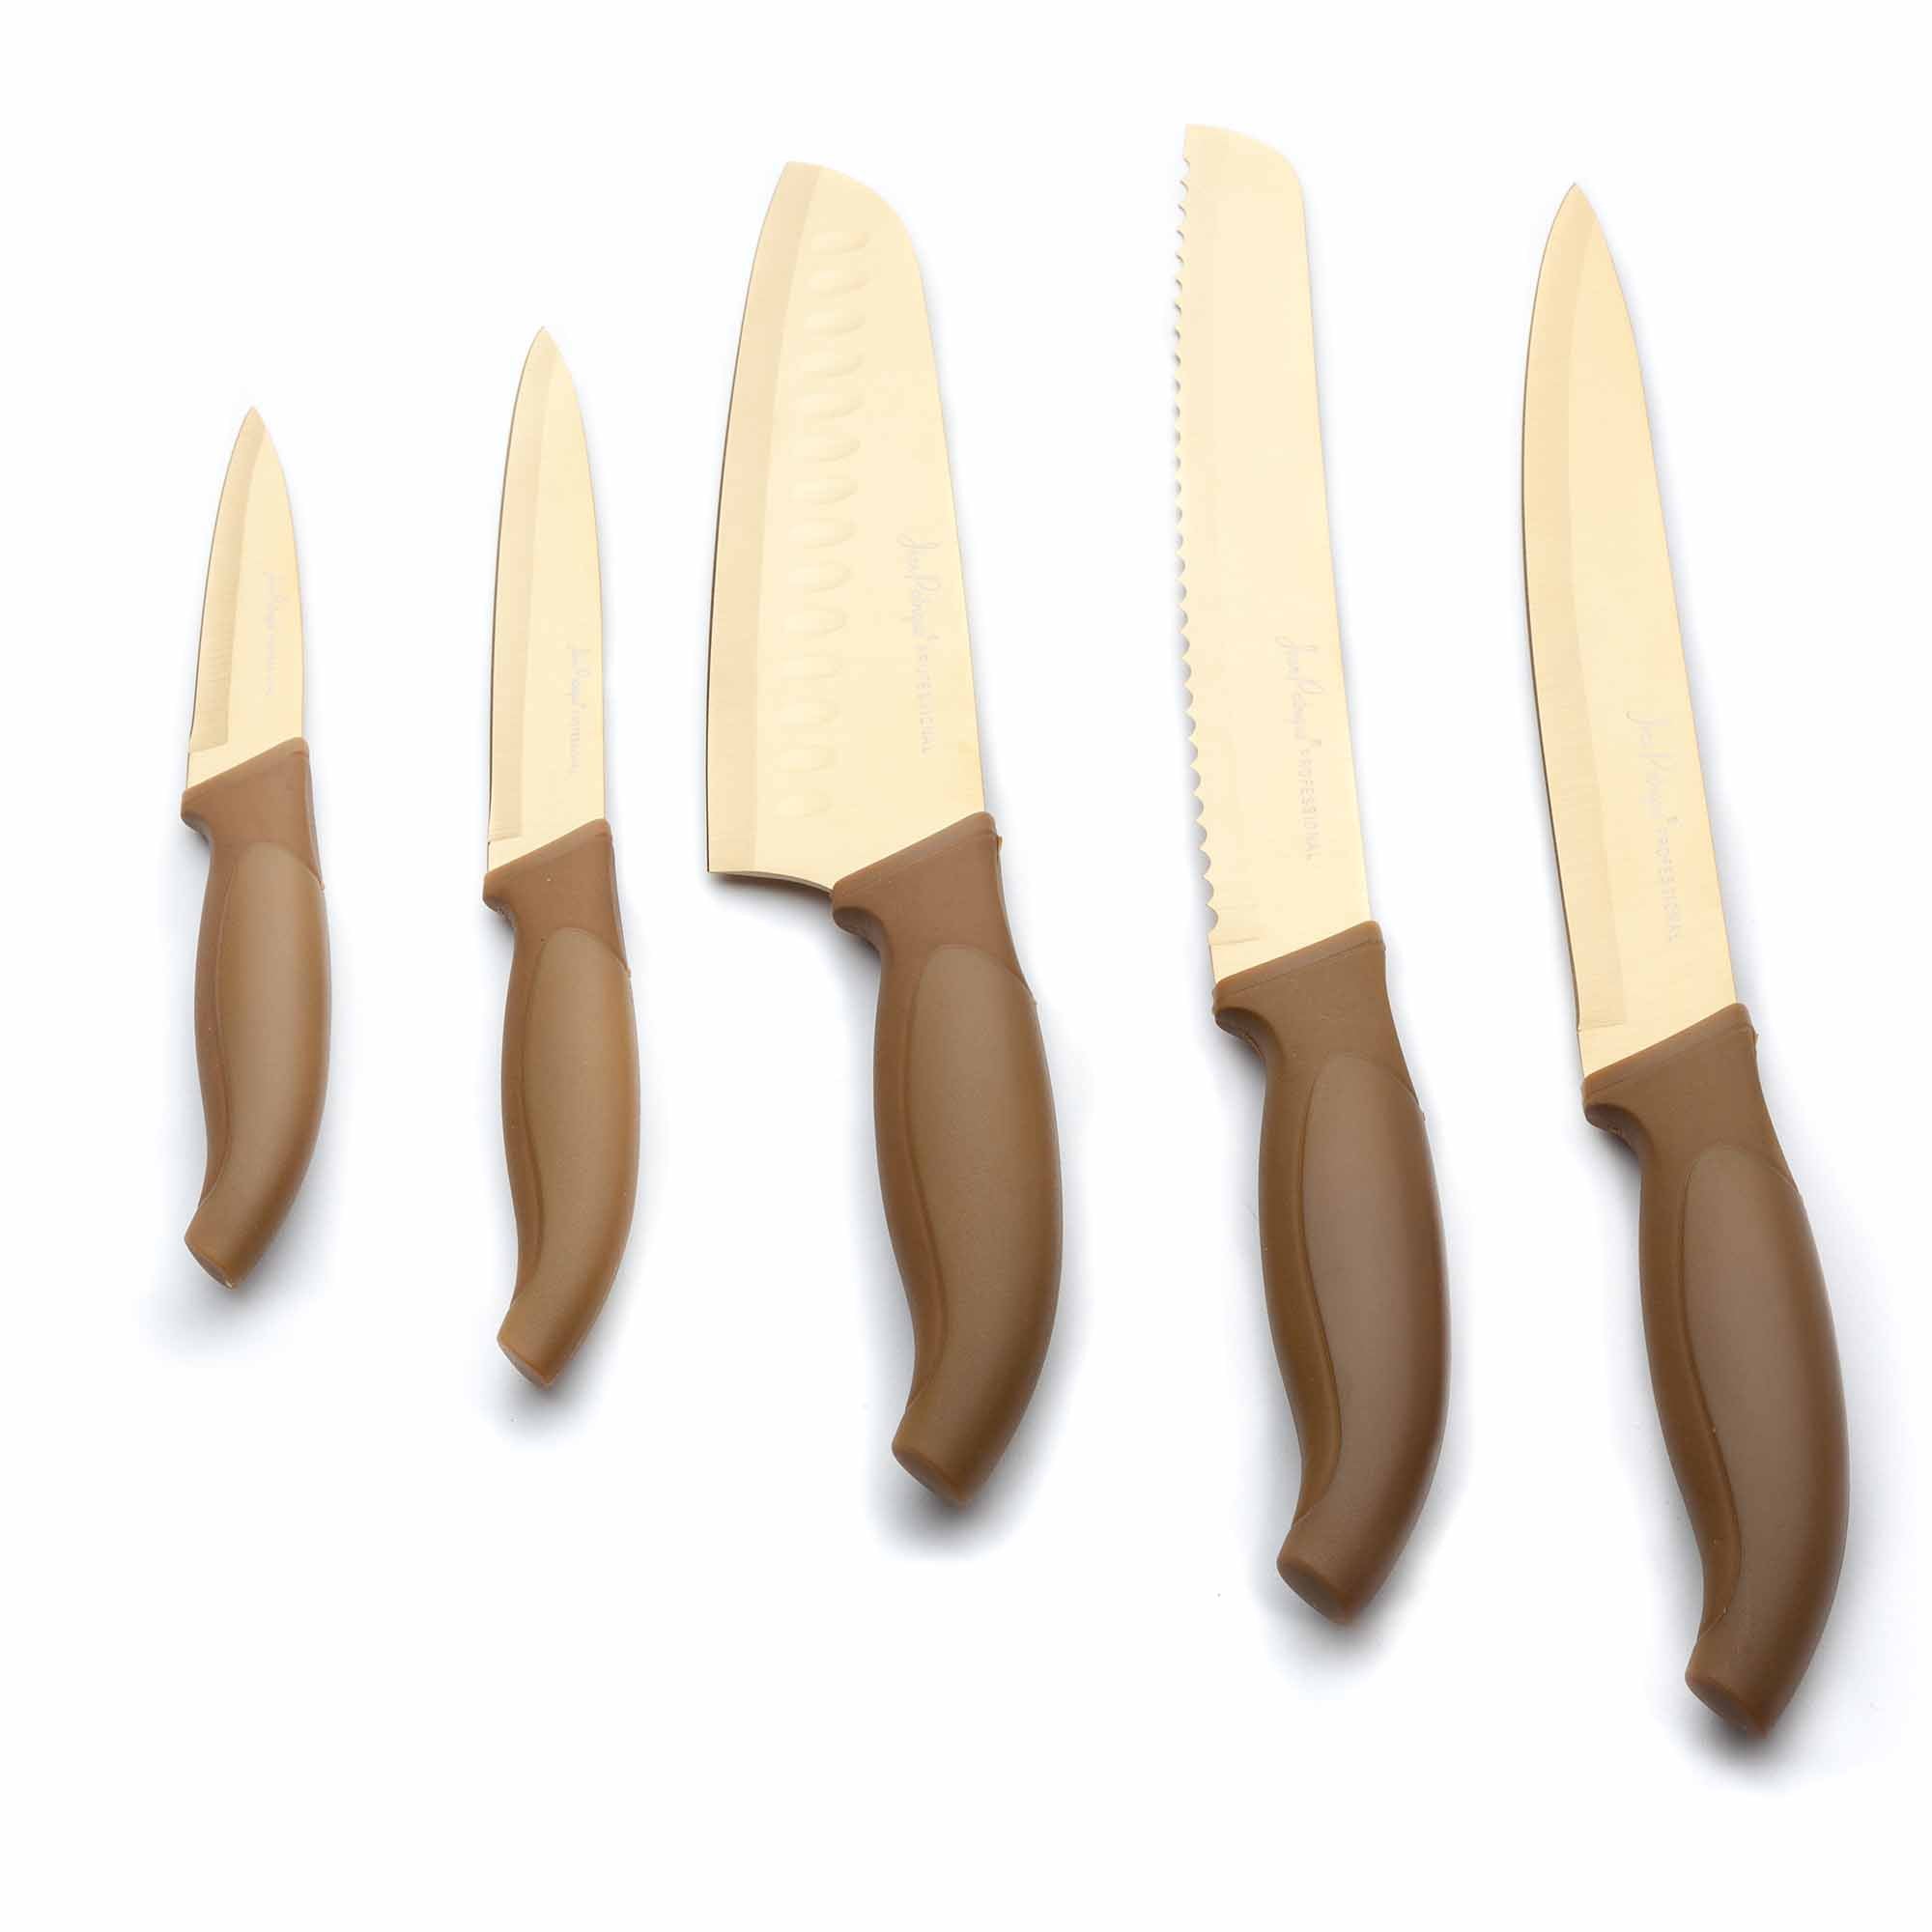 5-Piece Titanium Knife Set - Gold Blades/ Handles – Jean Patrique